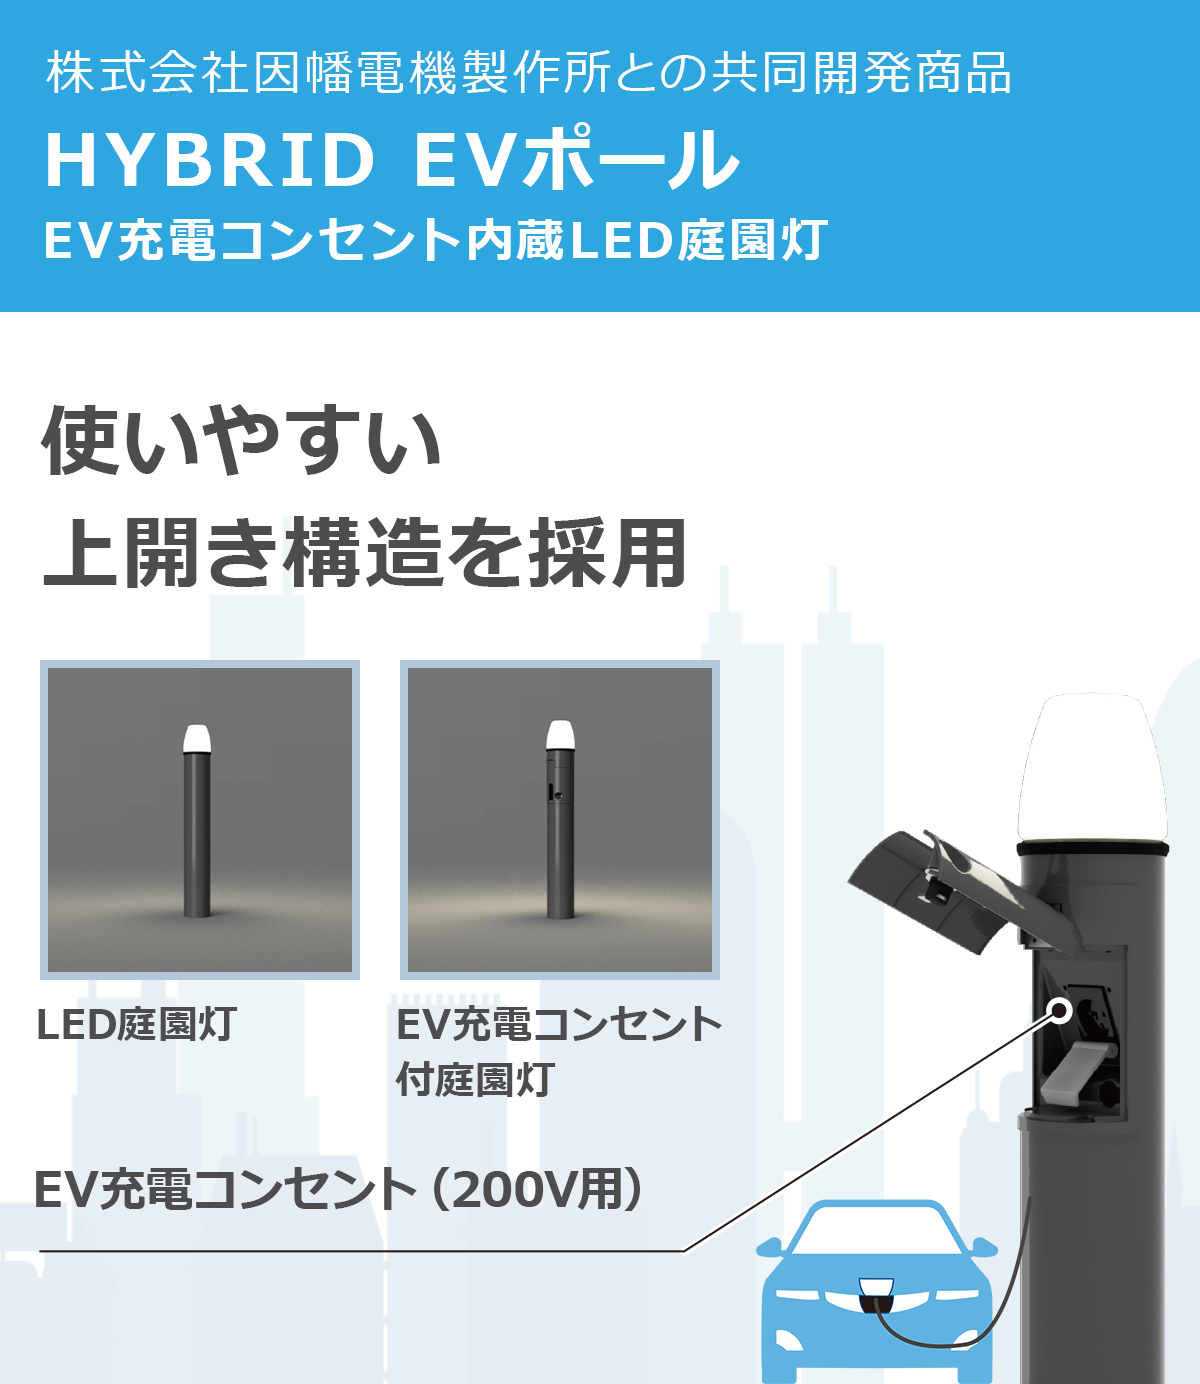 EV充電コンセント付きLED屋外照明「LEDIX EV」の説明図